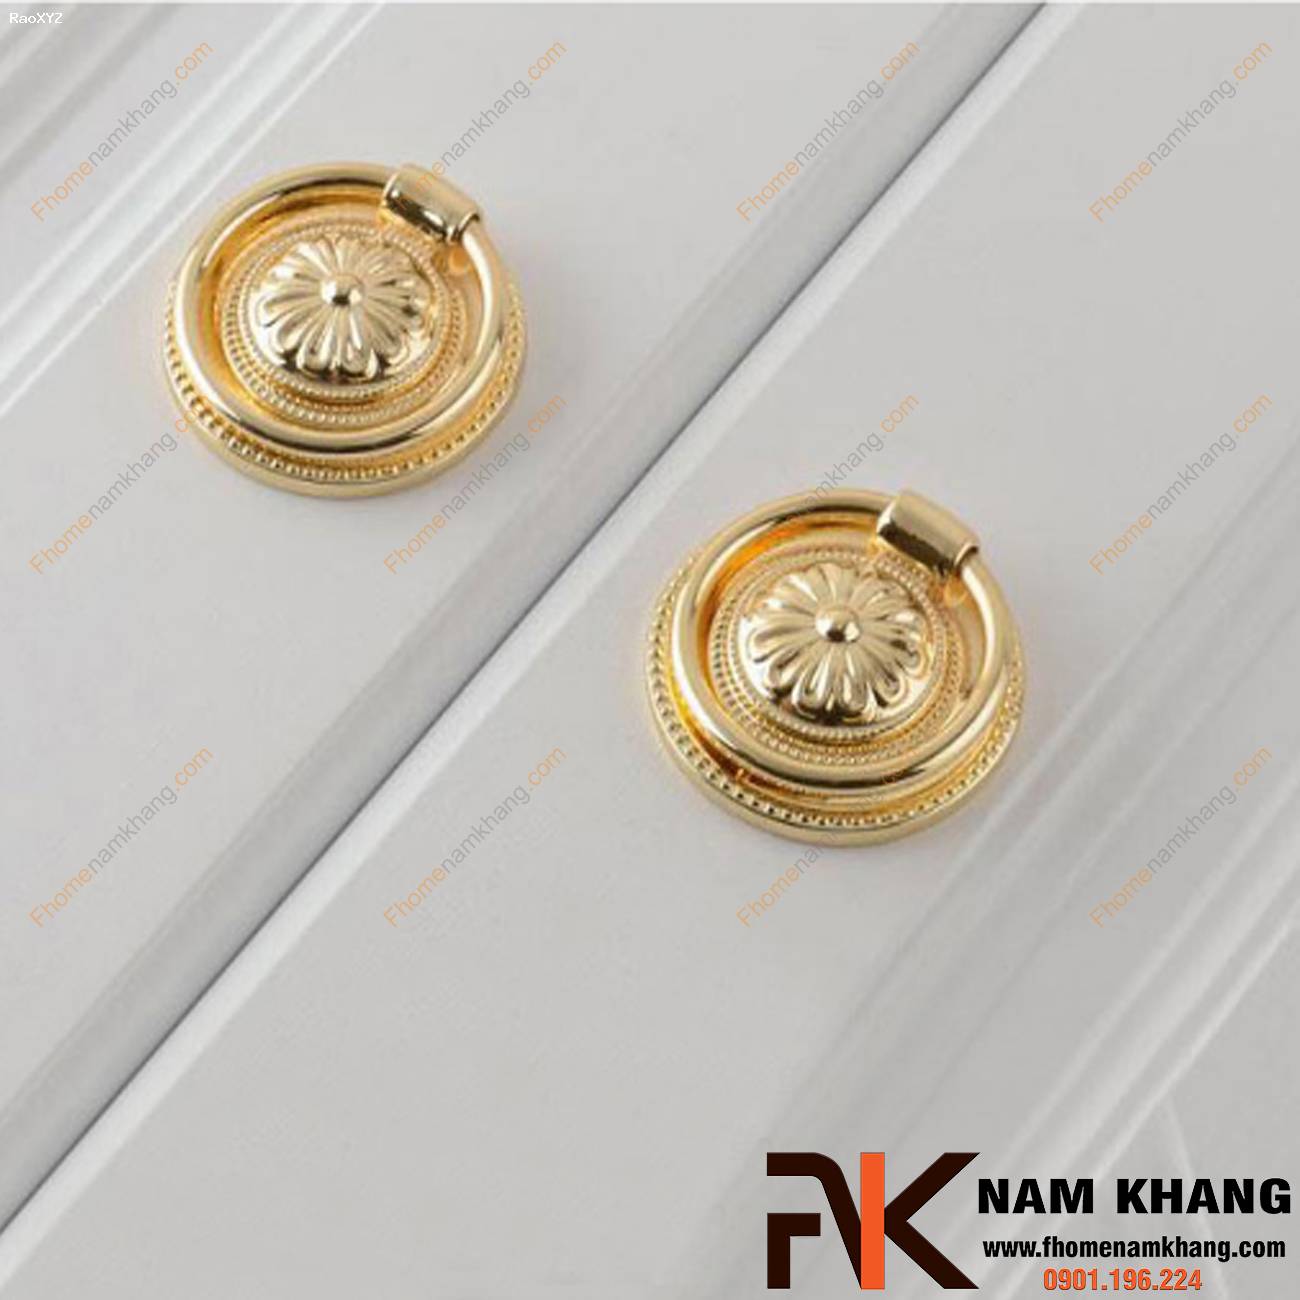 Núm cửa tủ cao cấp dạng vòng cổ điển NK224 | F-Home NamKhang